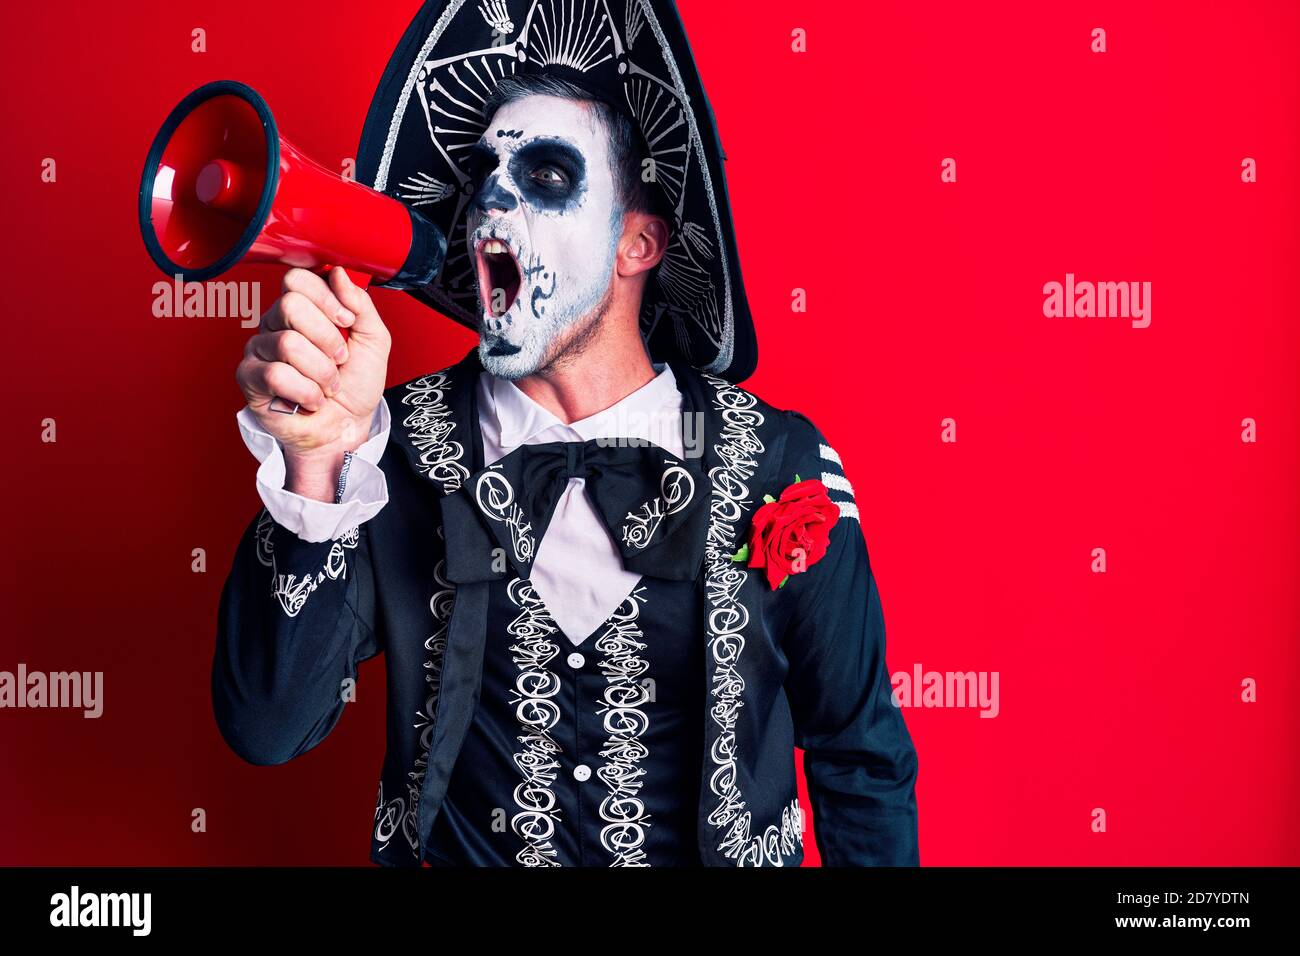 Uomo spaventoso che indossa giorno dei morti compongono e costume dal rituale tradizionale in Messico gridando attraverso il megafono Foto Stock